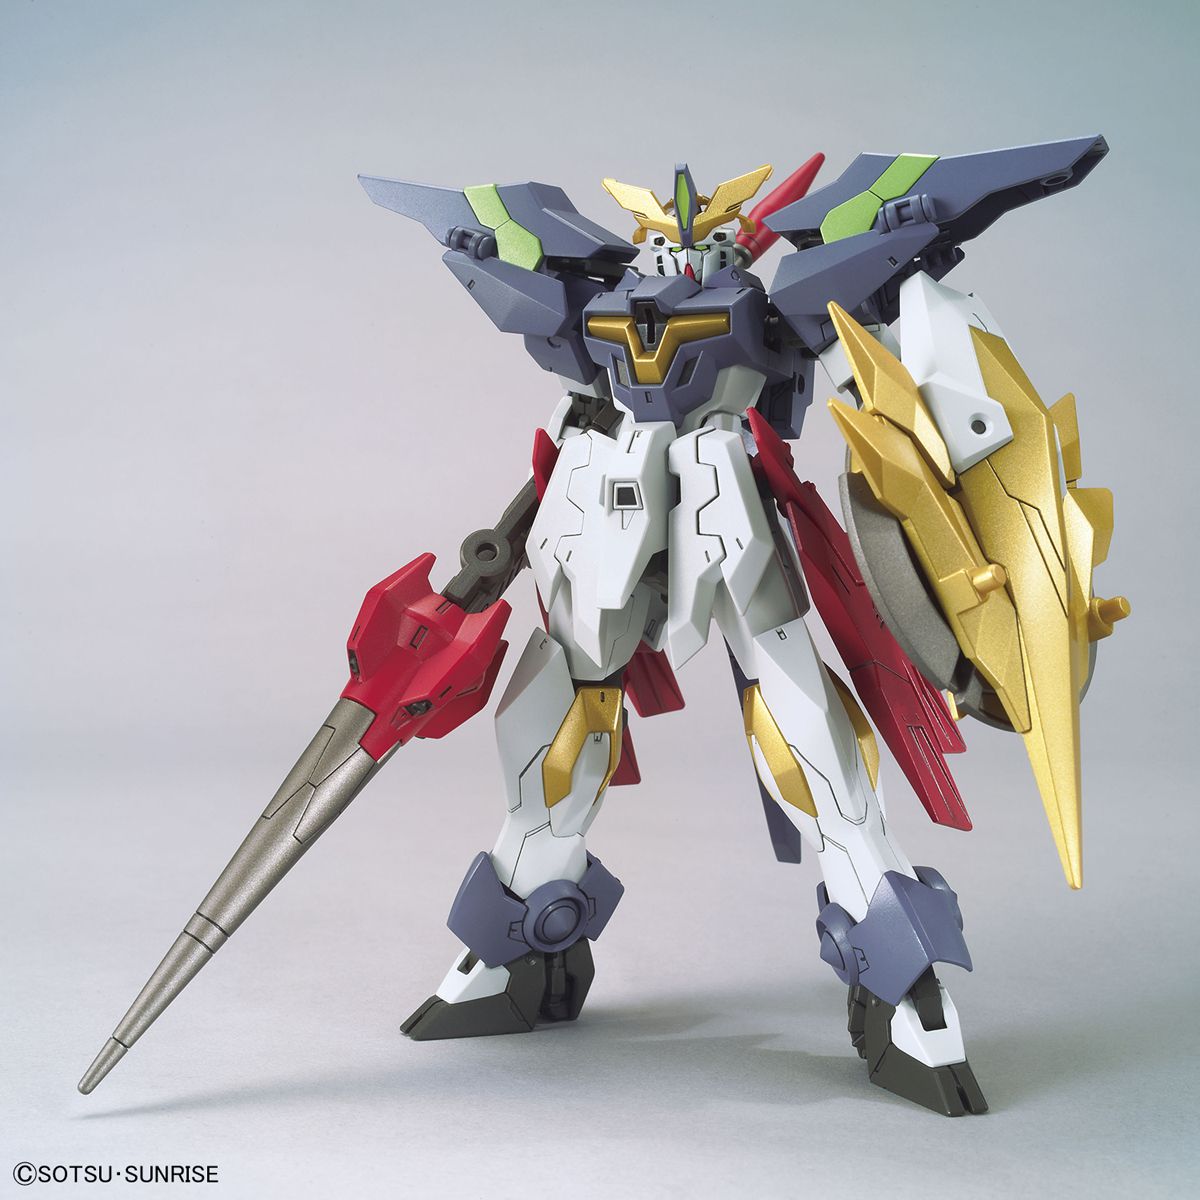 HGBD:R 1/144 Gundam Aegis Knight - Glacier Hobbies - Bandai